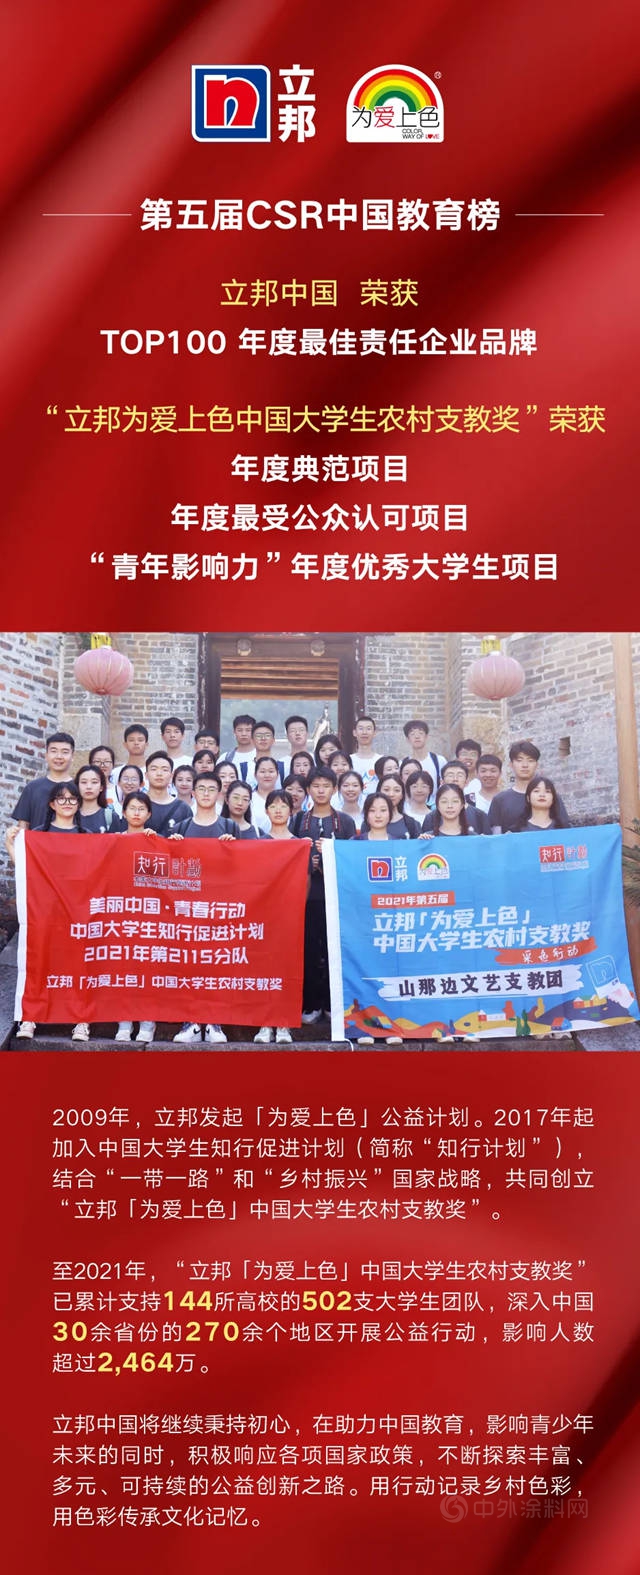 立邦中国获第五届CSR中国教育榜多项荣誉